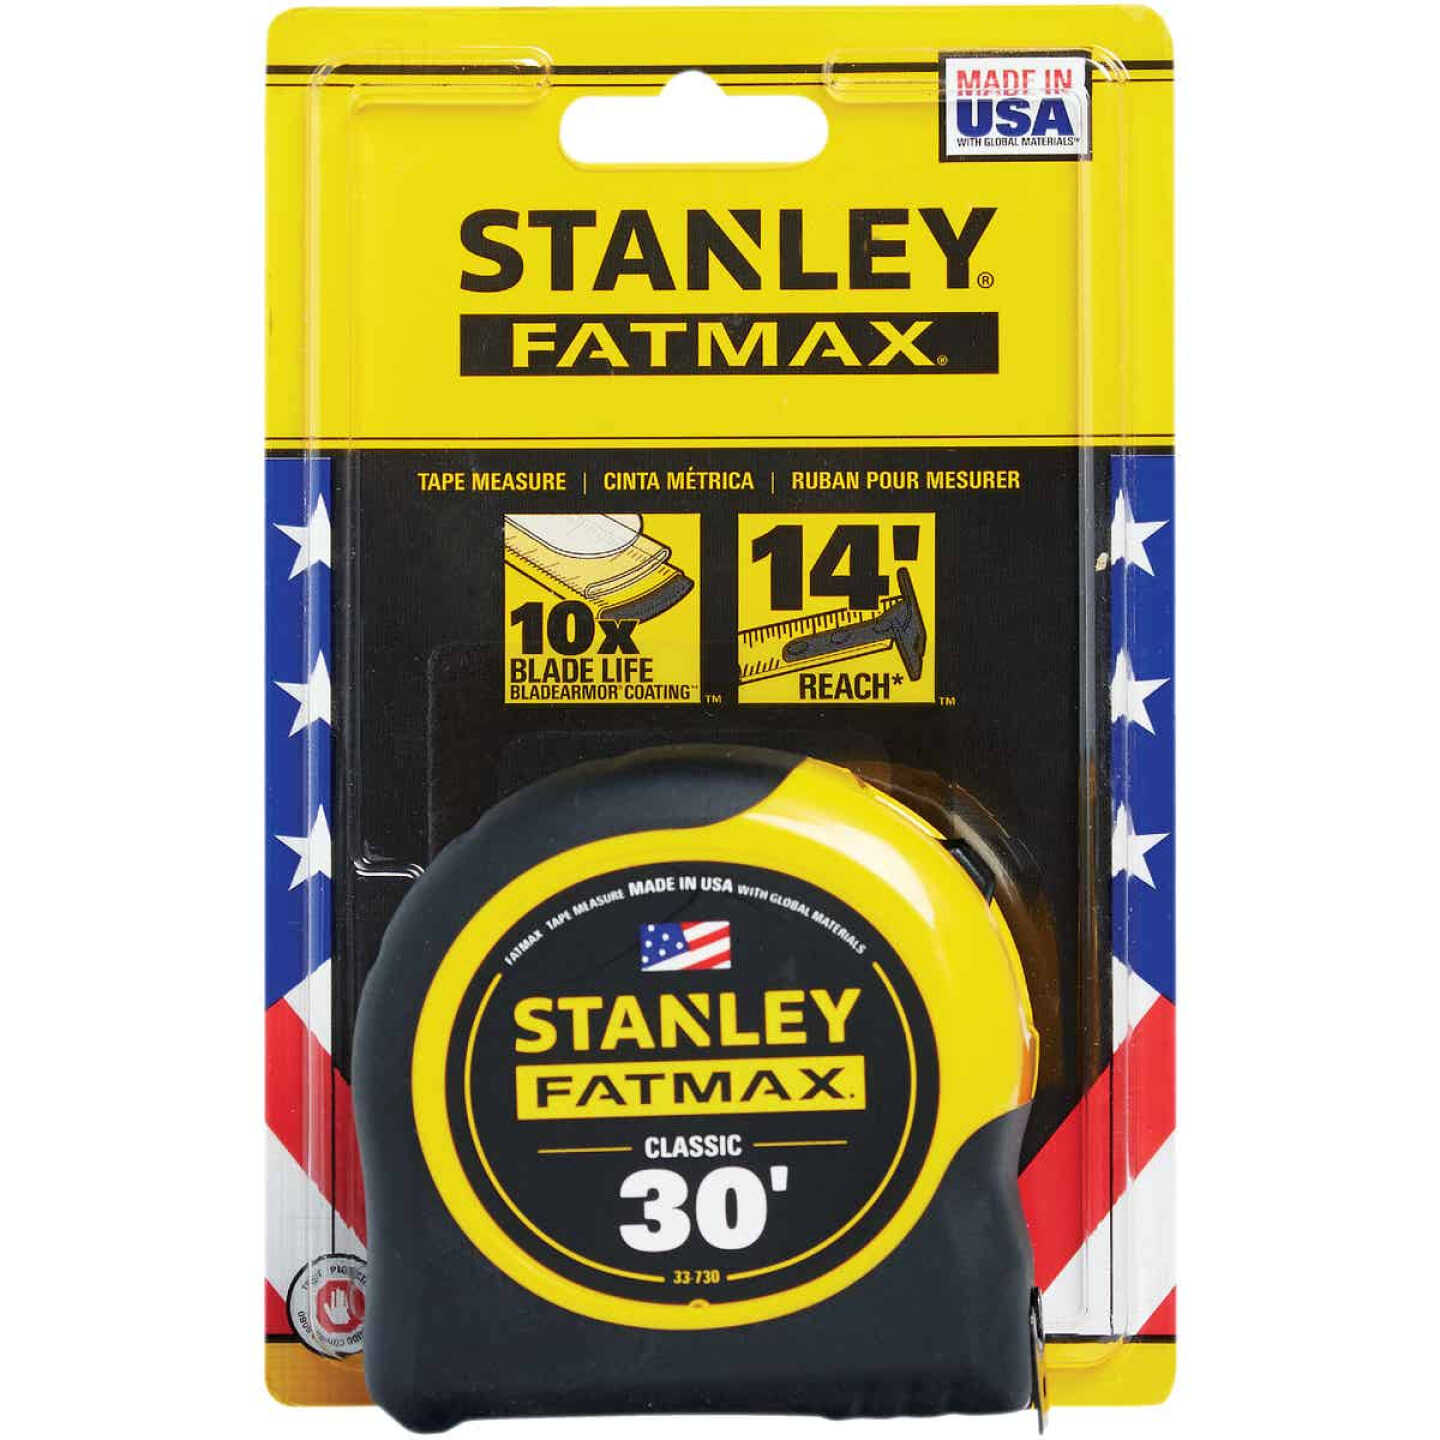 Stanley 33-725 25-Feet FatMax Tape Measure